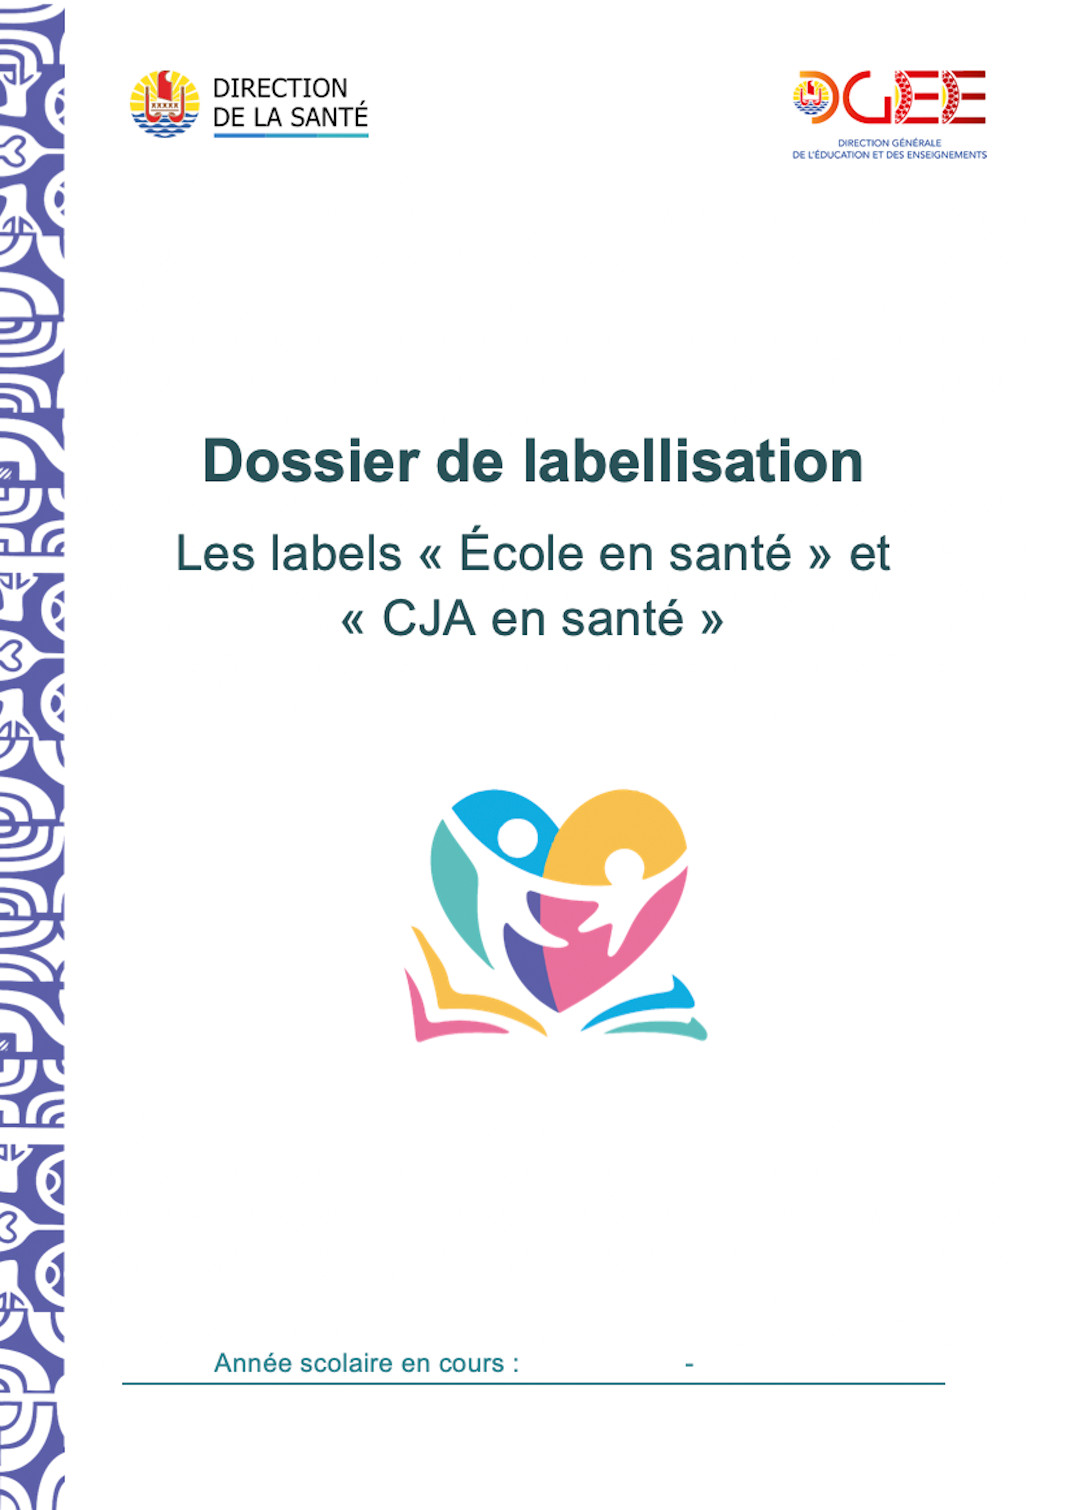 Dossier de labellisation « École en santé » et « CJA en santé »